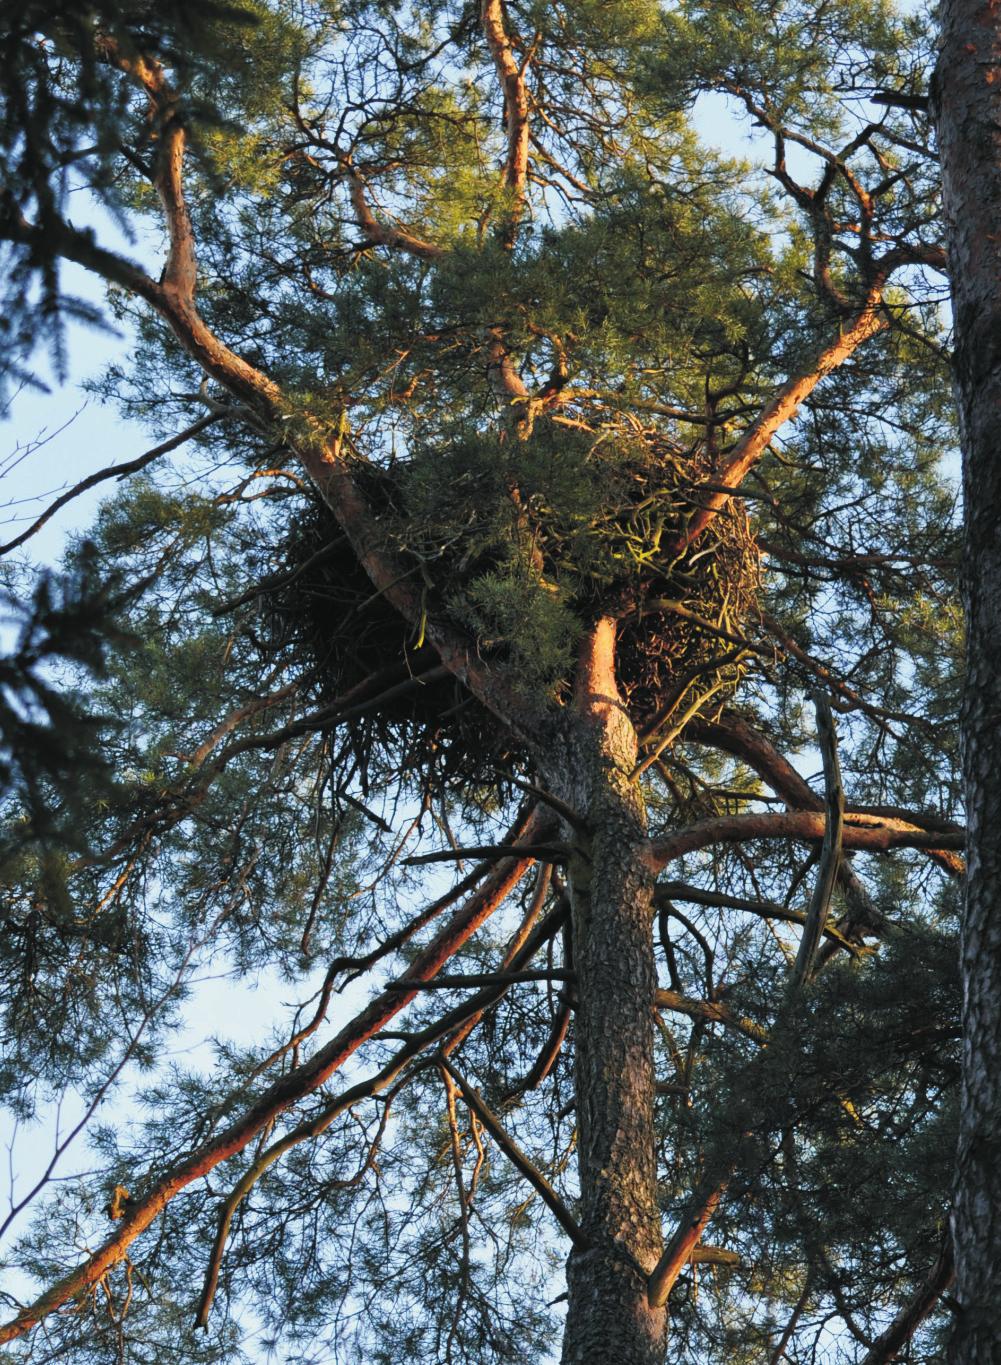 wirze wykryto kolejne gniazda. Następne stanowiska lęgowe w Borach Stobrawsko-Turawskich stwierdzono w pierwszej połowie lat 90. (Wyszyński 1995).